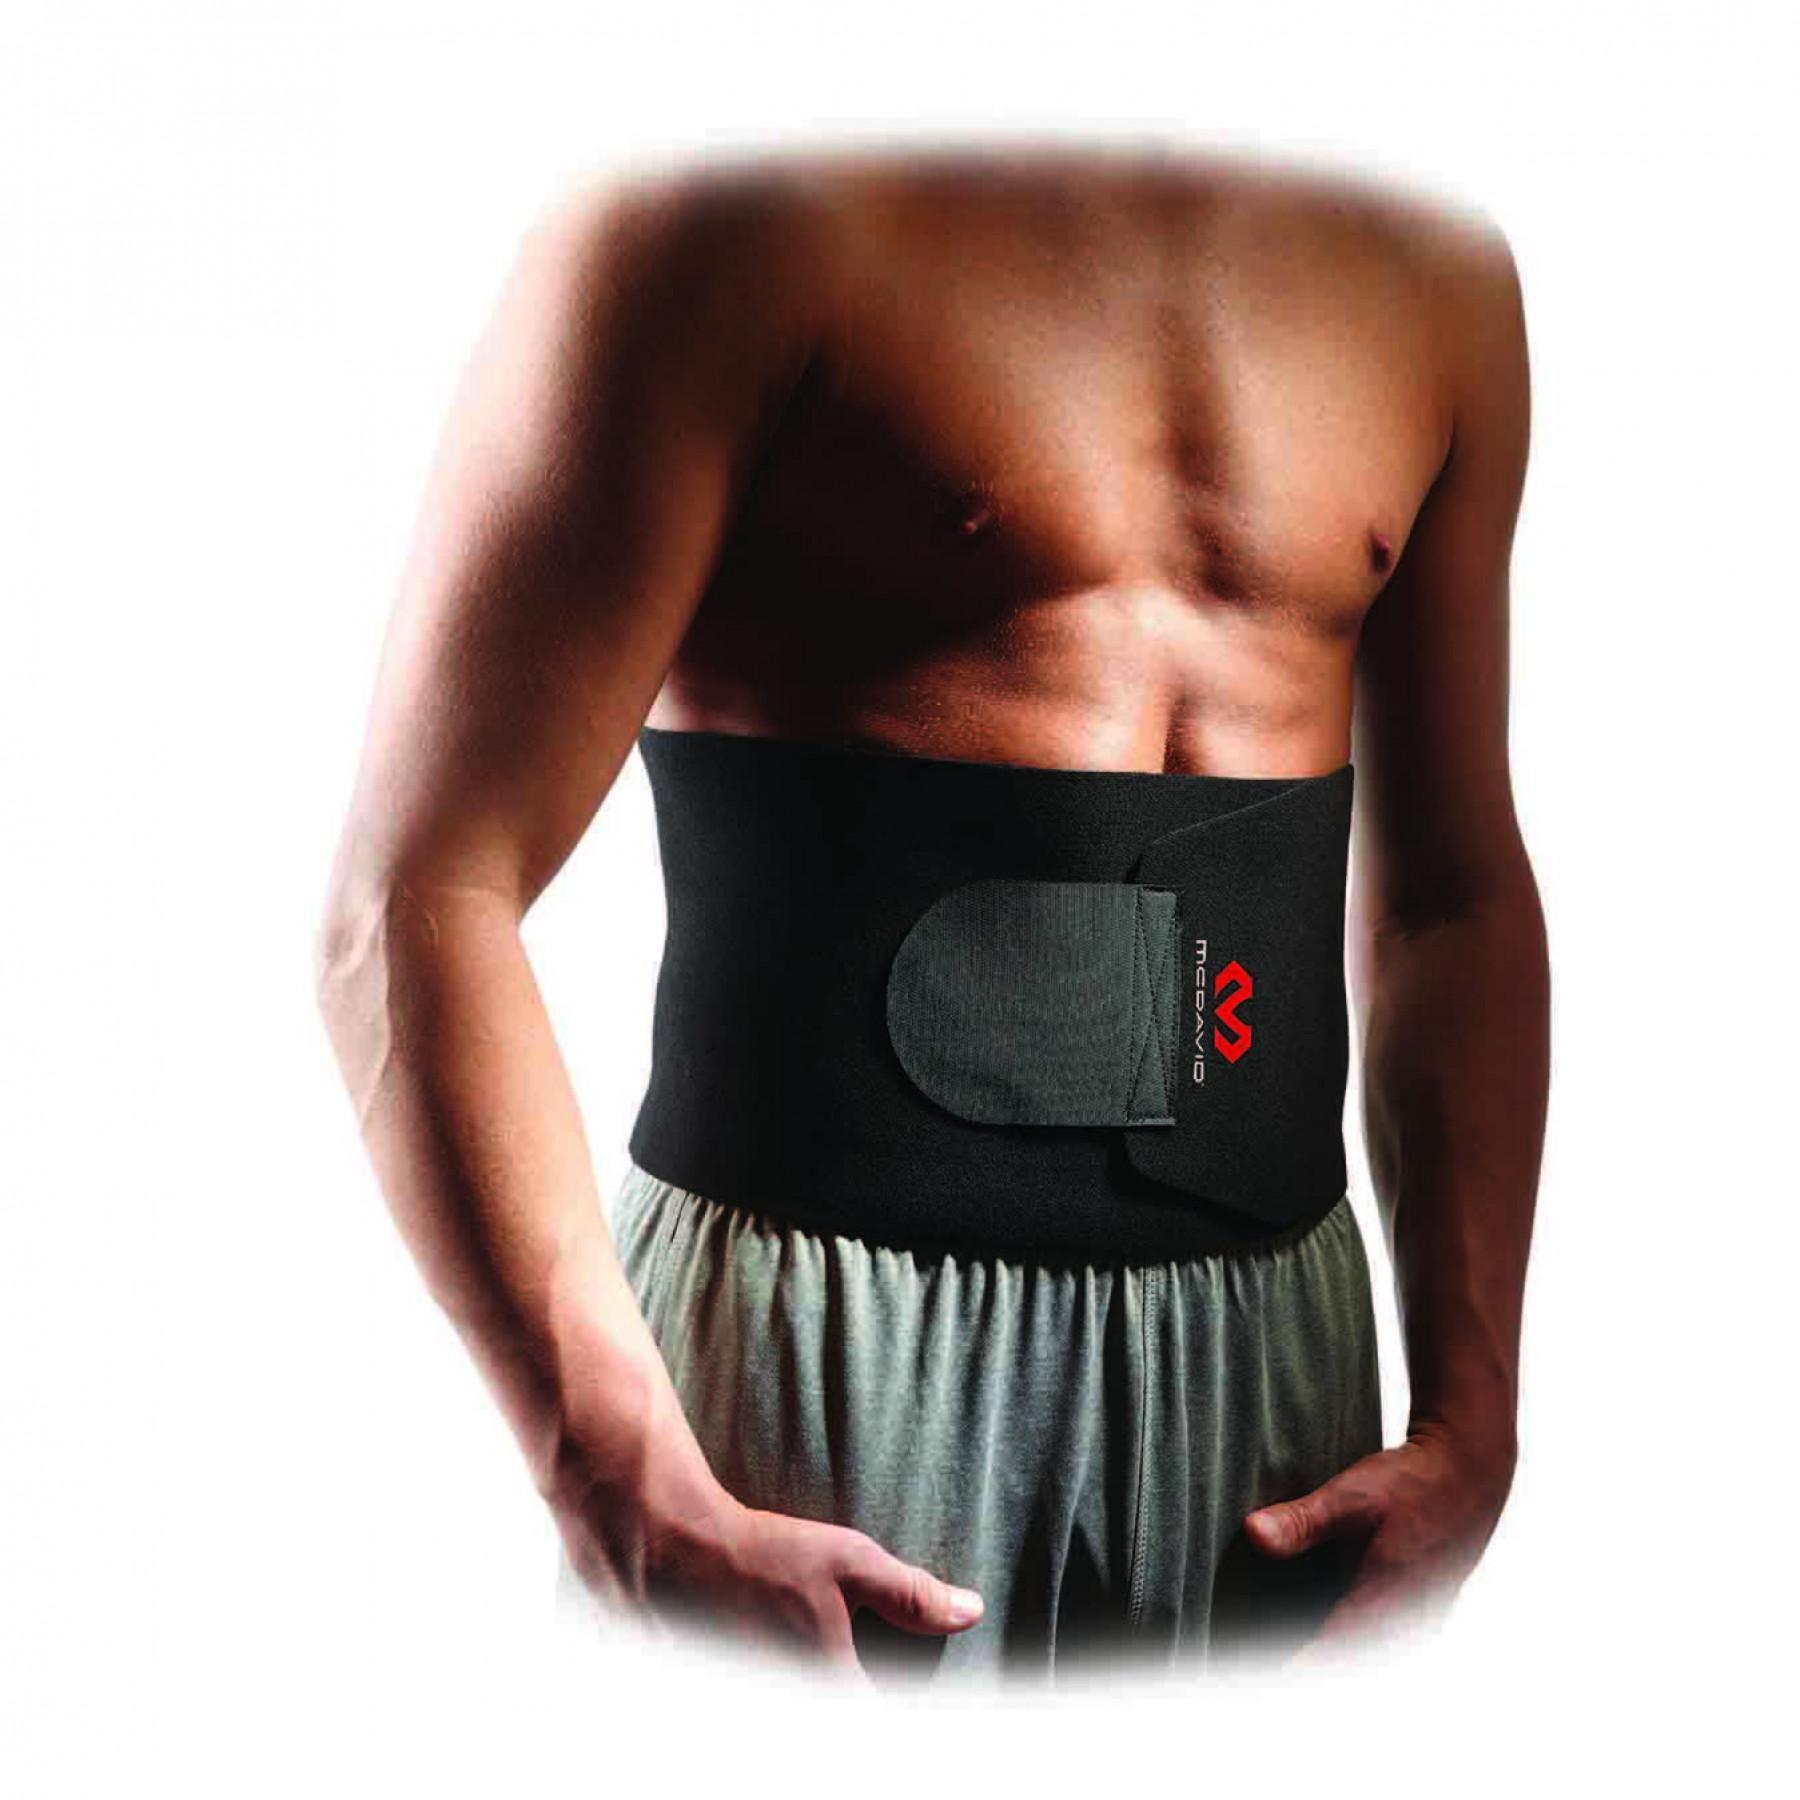 Lumbar belt McDavid néoprène - Fitness and training - Accessories -  Equipments